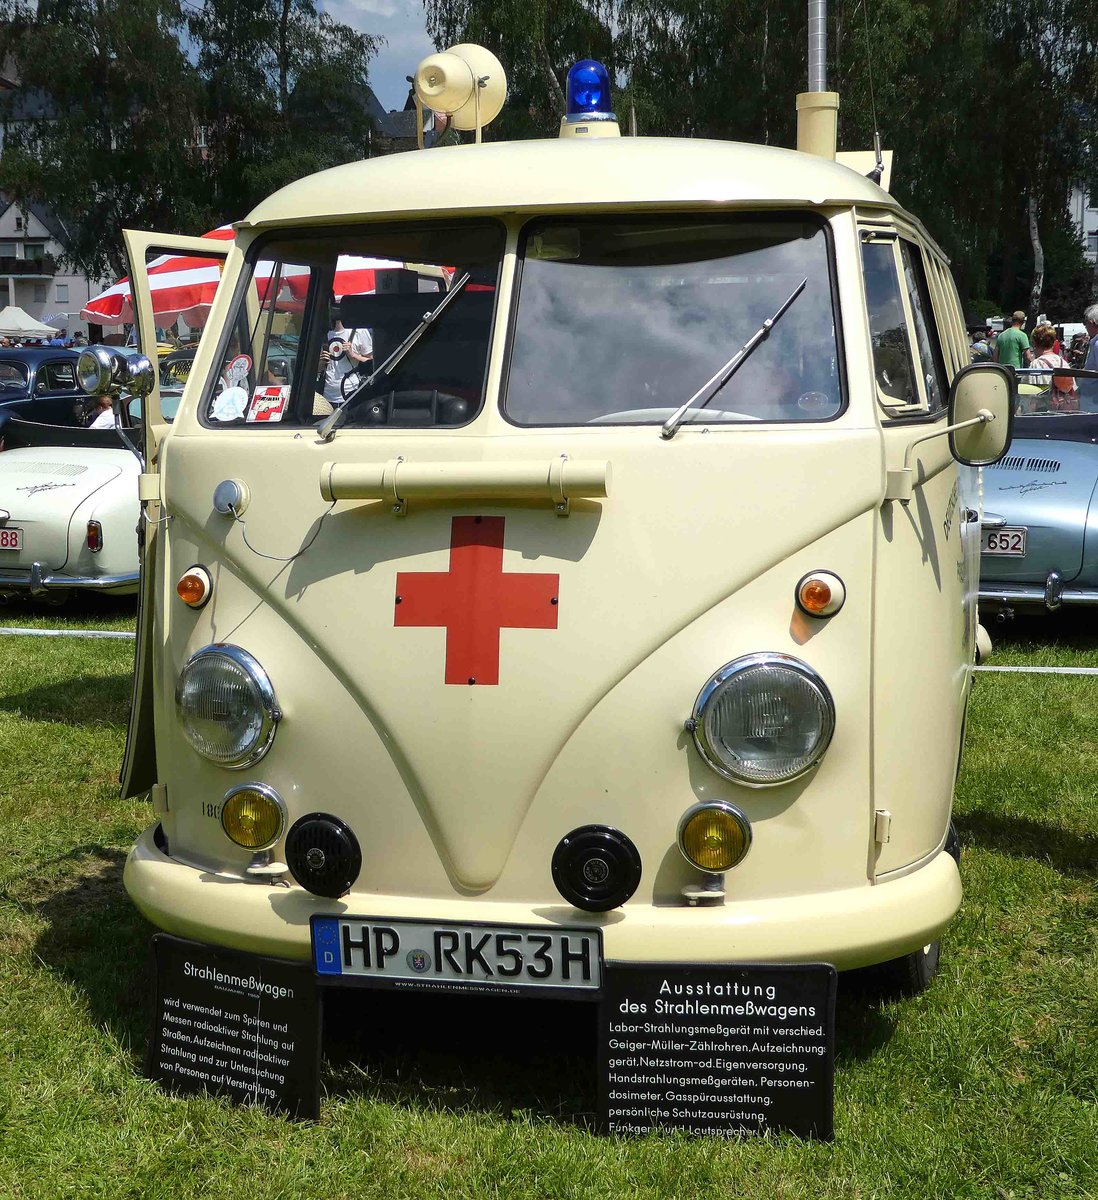 =VW T1, ehemaliges Strahlenmeßfahrzeug des DRK, präsentiert auf dem Ausstellungsgelände in Bad Camberg anl. LOTTERMANN-Bullitreffen im Juni 2019